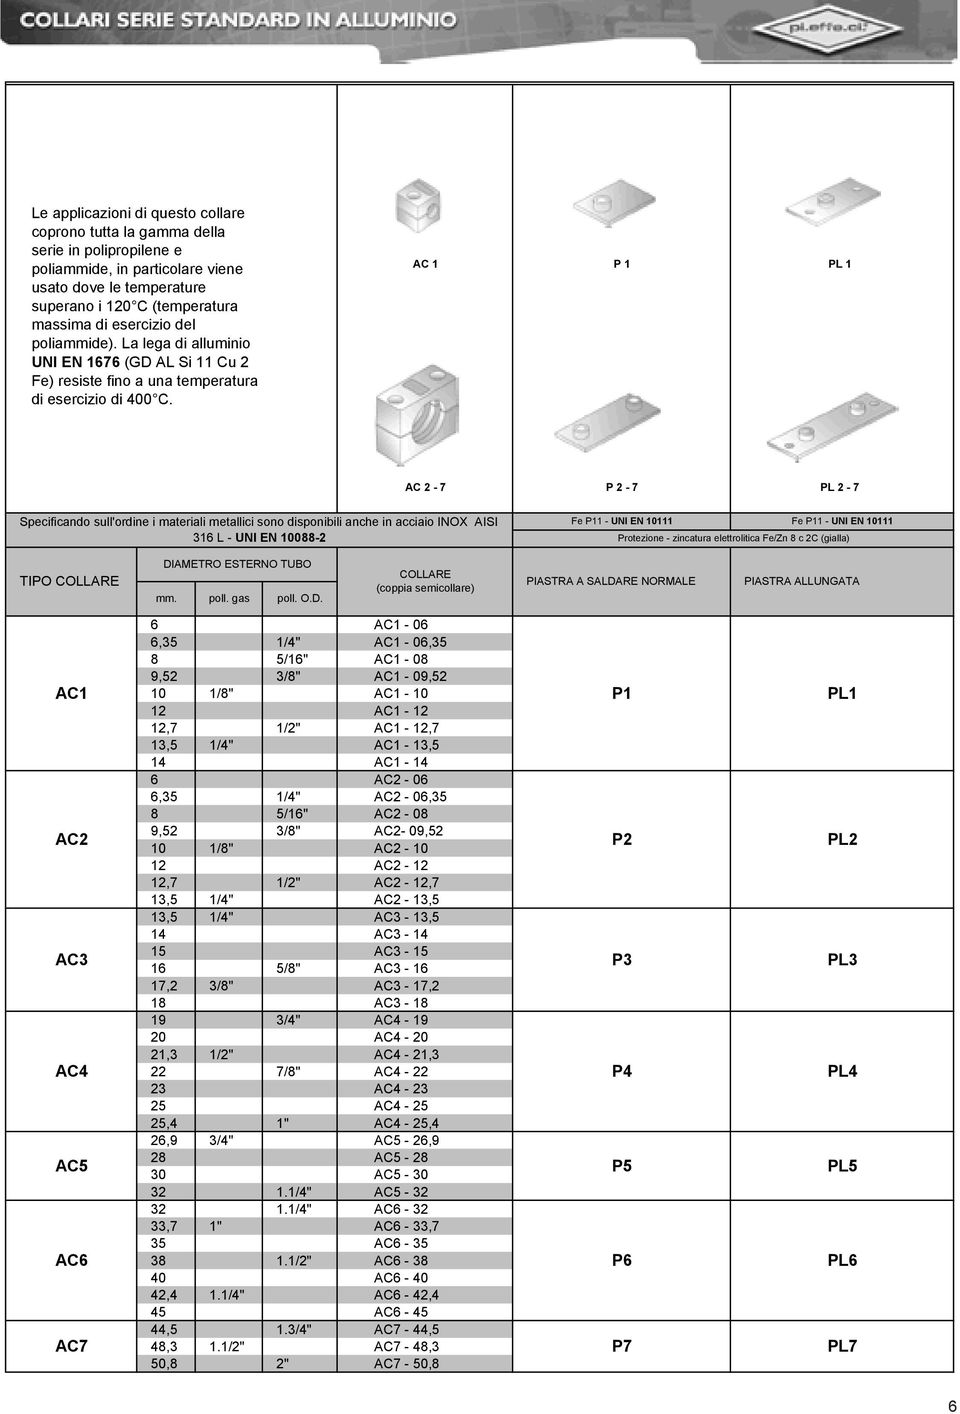 AC 1 P 1 PL 1 AC 2-7 P 2-7 PL 2-7 Specificando sull'ordine i materiali metallici sono disponibili anche in acciaio INOX AISI 316 L - UNI EN 10088-2 Fe P11 - UNI EN 10111 Fe P11 - UNI EN 10111